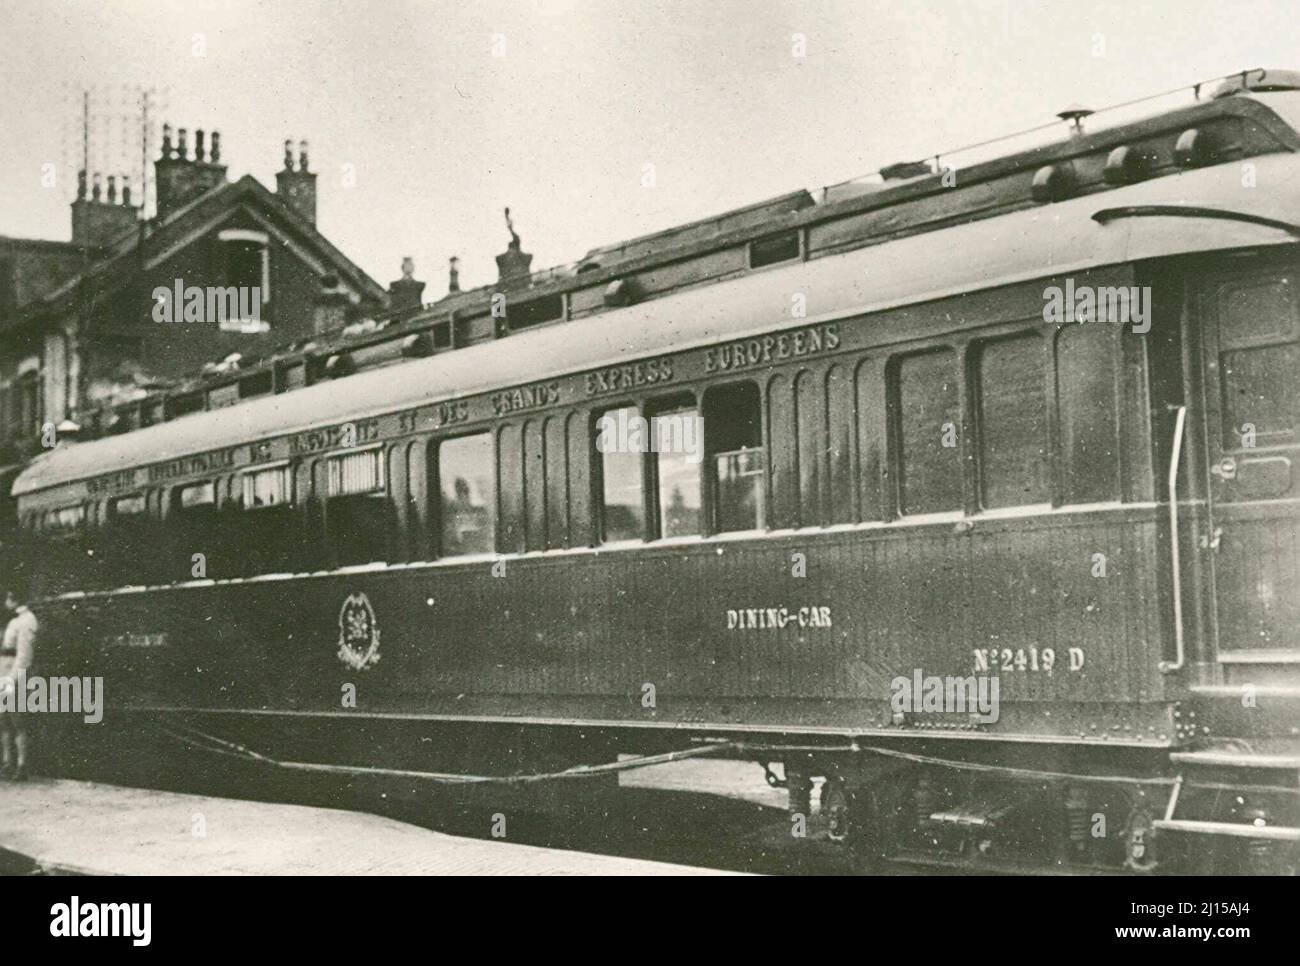 Marshal Foch's Train. Caption: Questa macchina del treno è stata usata per tenere i negoziati con i tedeschi e dove l'armistizio è stato firmato alle 5 del mattino, il 11 novembre 1918 Foto Stock